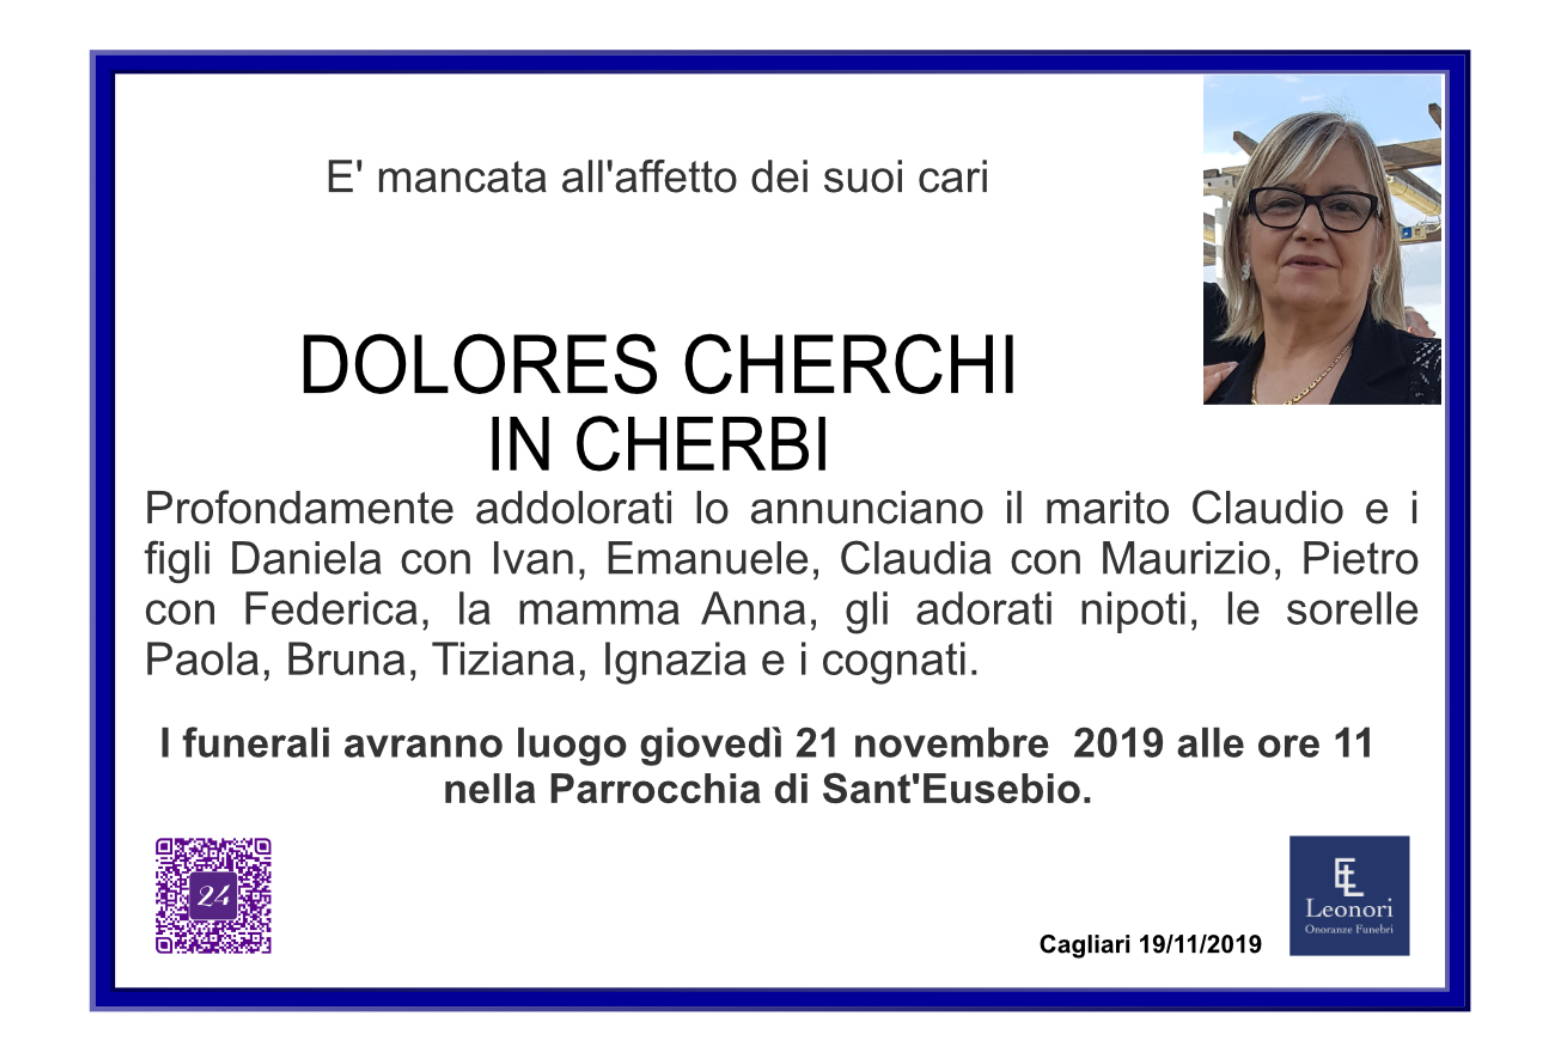 Maria Dolores Cherchi